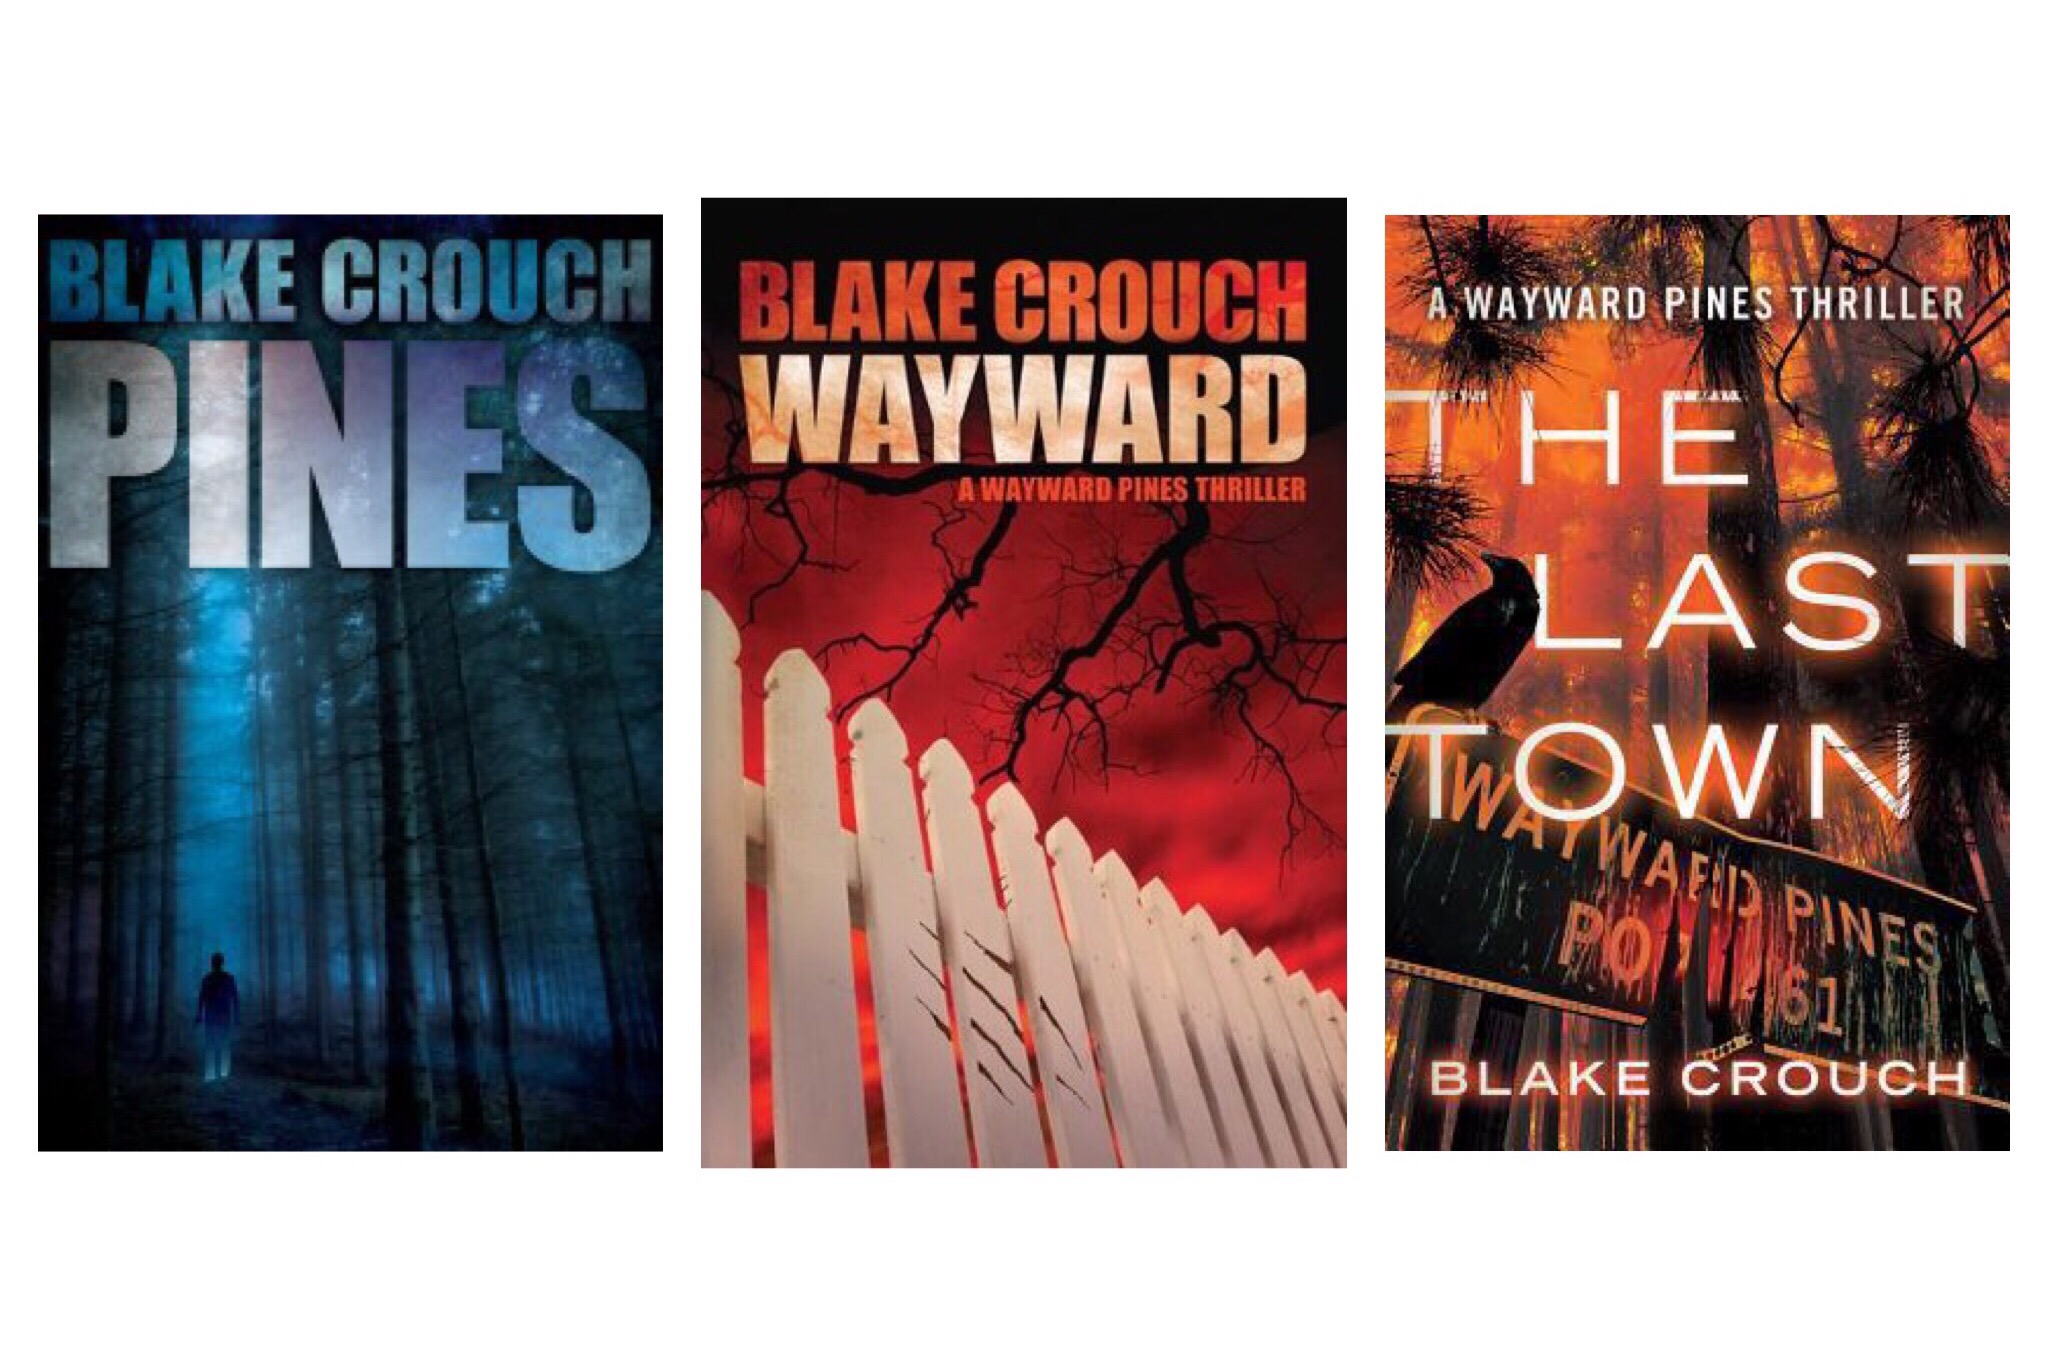 Wayward Pines trilogy